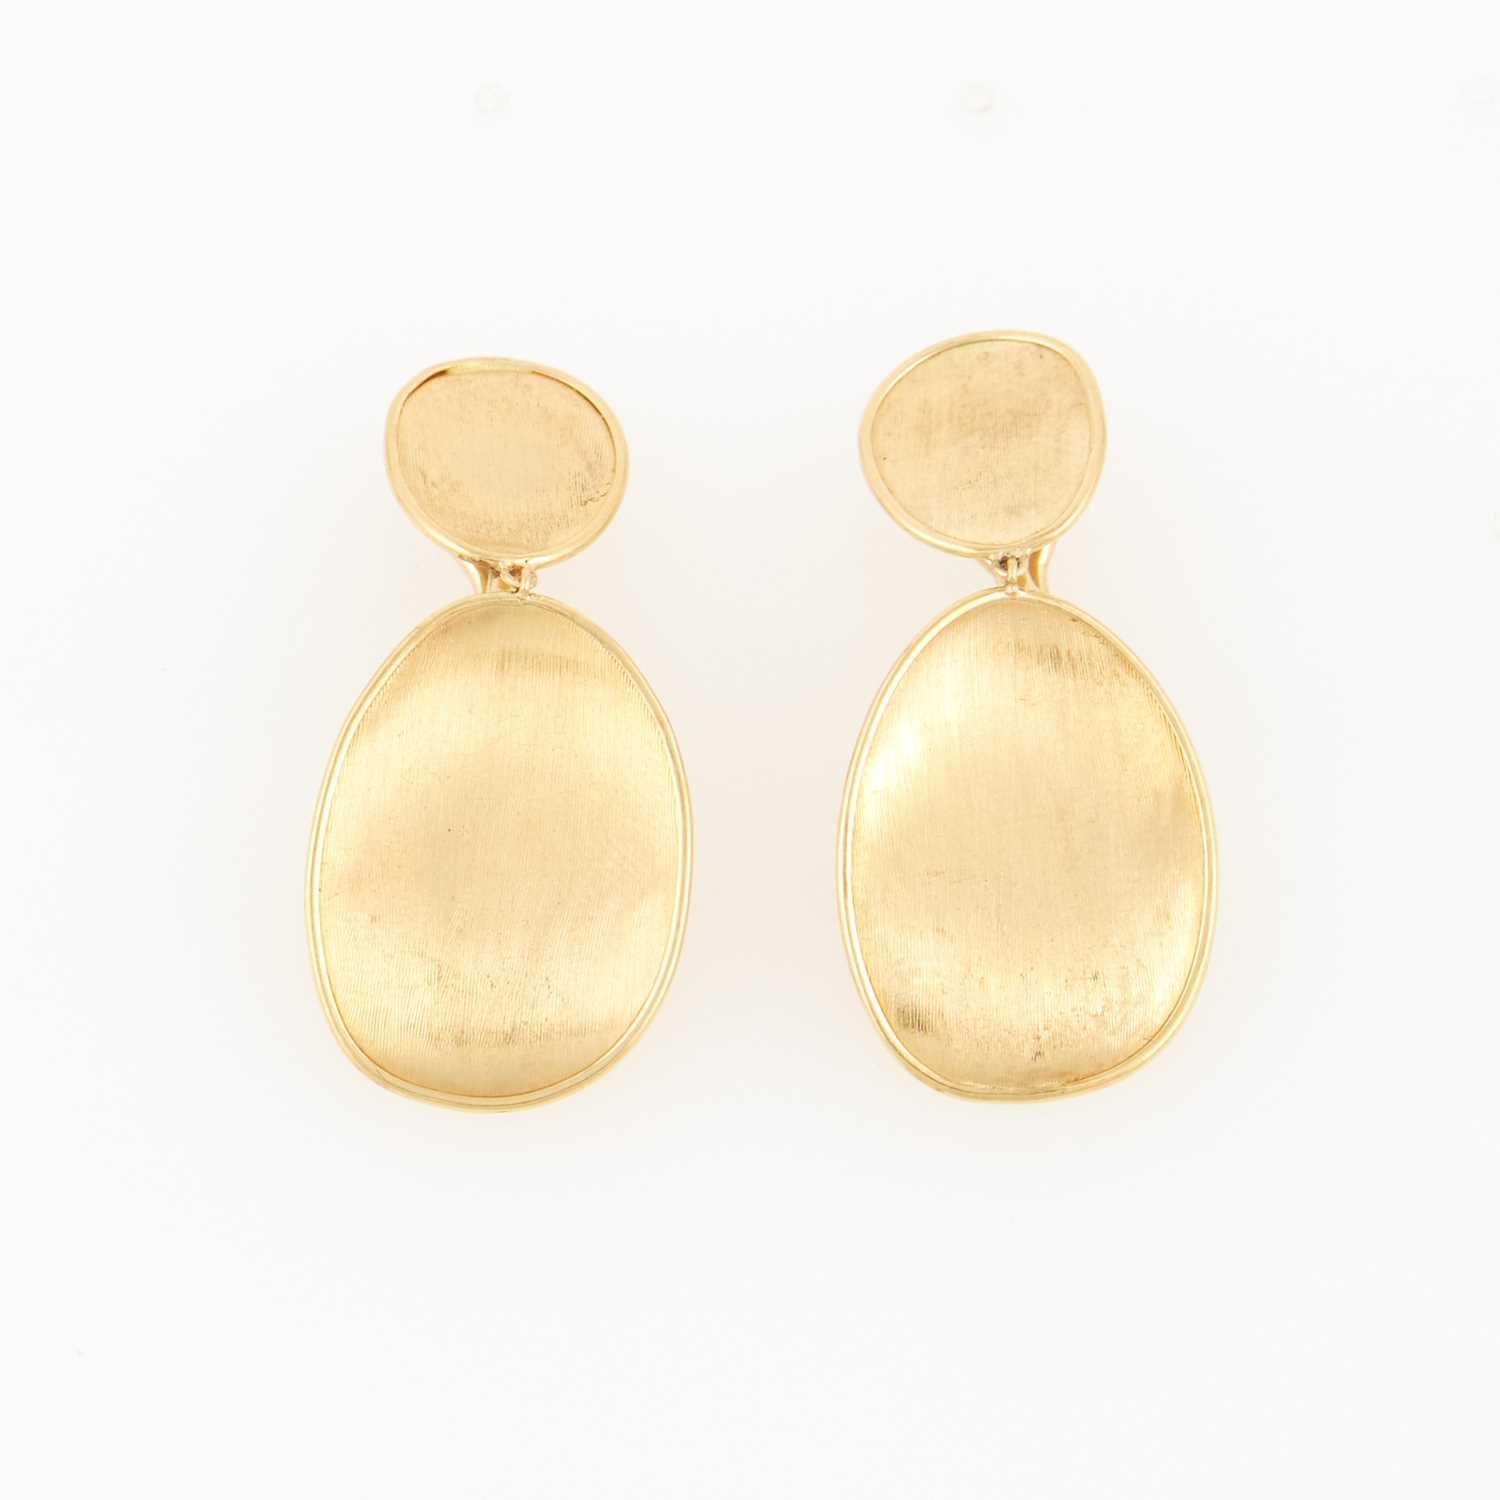 Lot 59 - Two Gold Earrings, 18K 4 dwt.